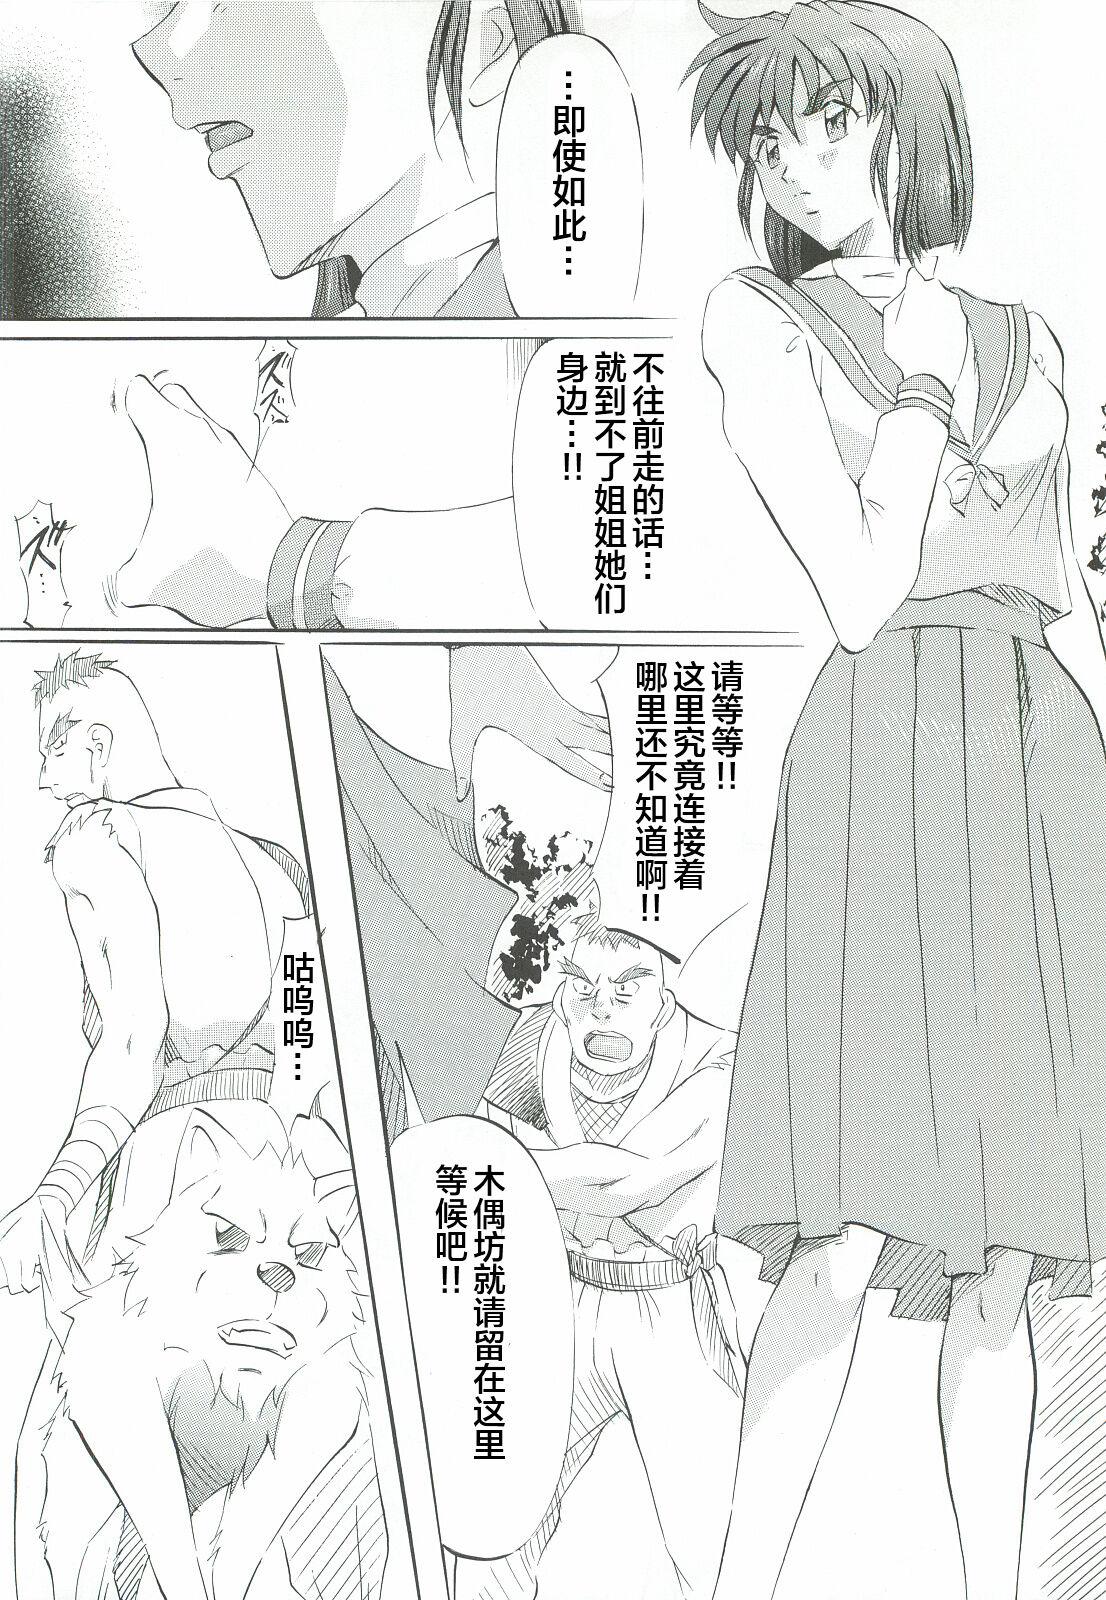 Asses Ai & Mai Gaiden - Kishin Fukkatsu no Shou - Twin angels | injuu seisen Small Tits - Page 7